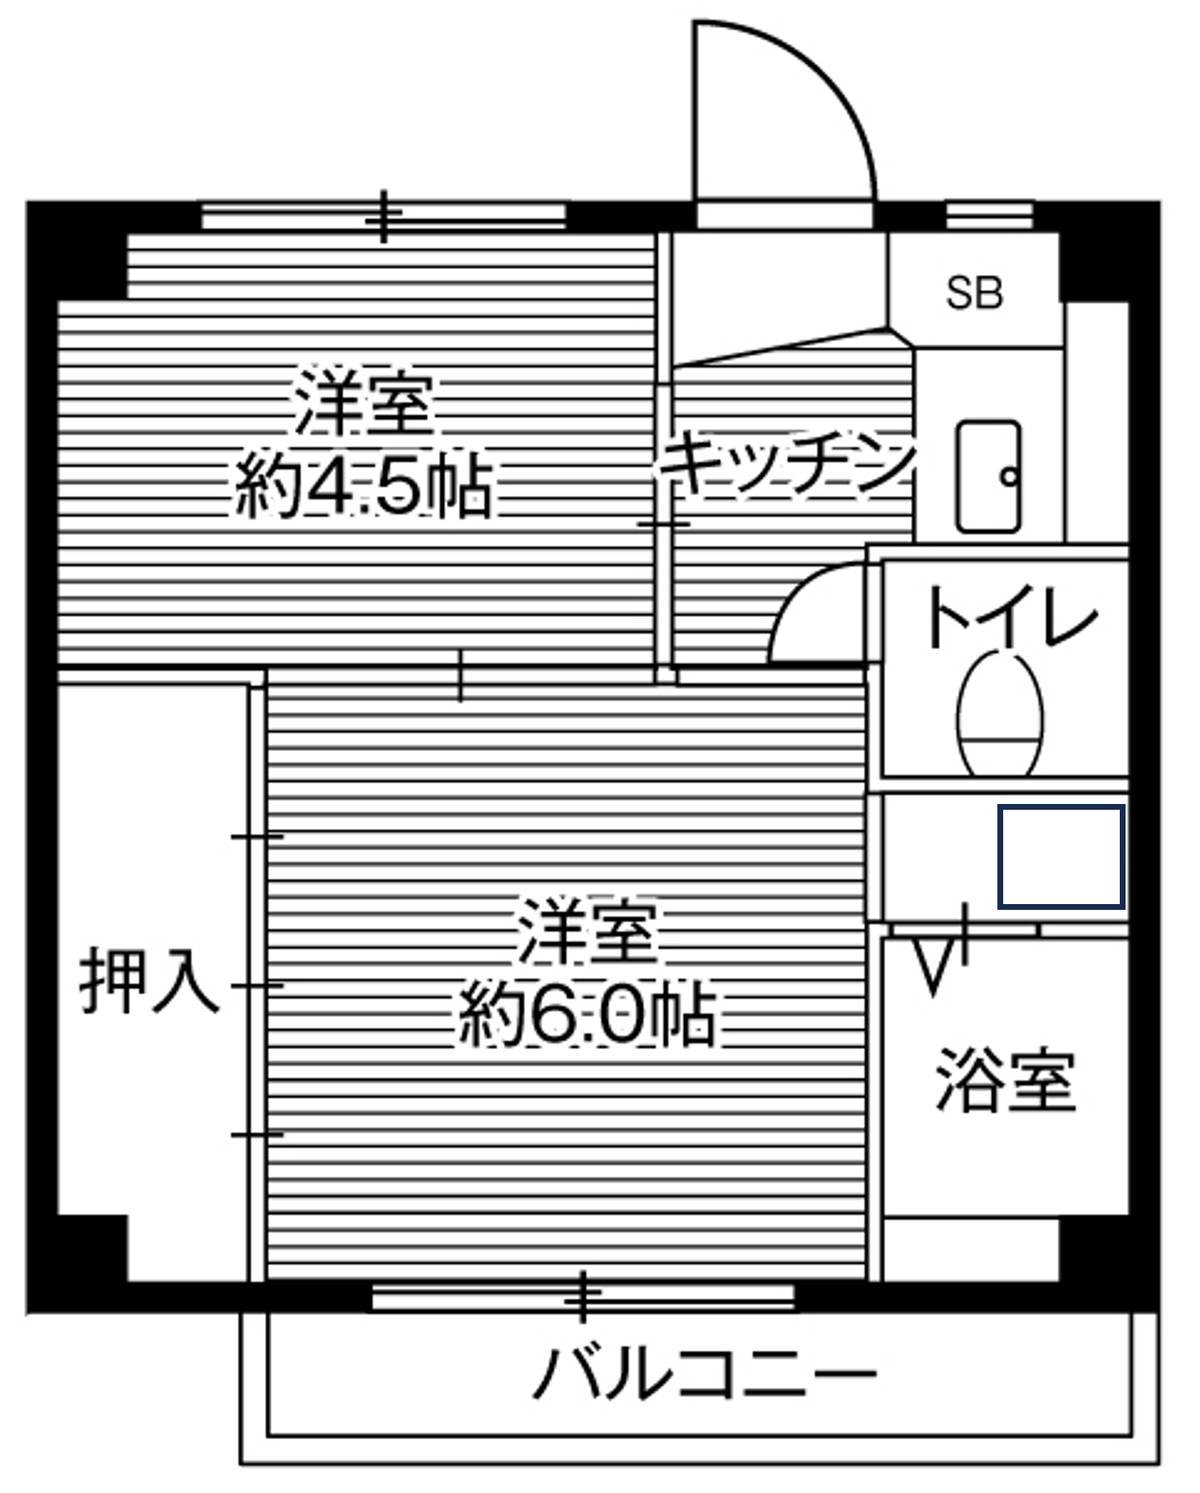 Sơ đồ phòng 2K của Village House Ichihara ở Ichihara-shi